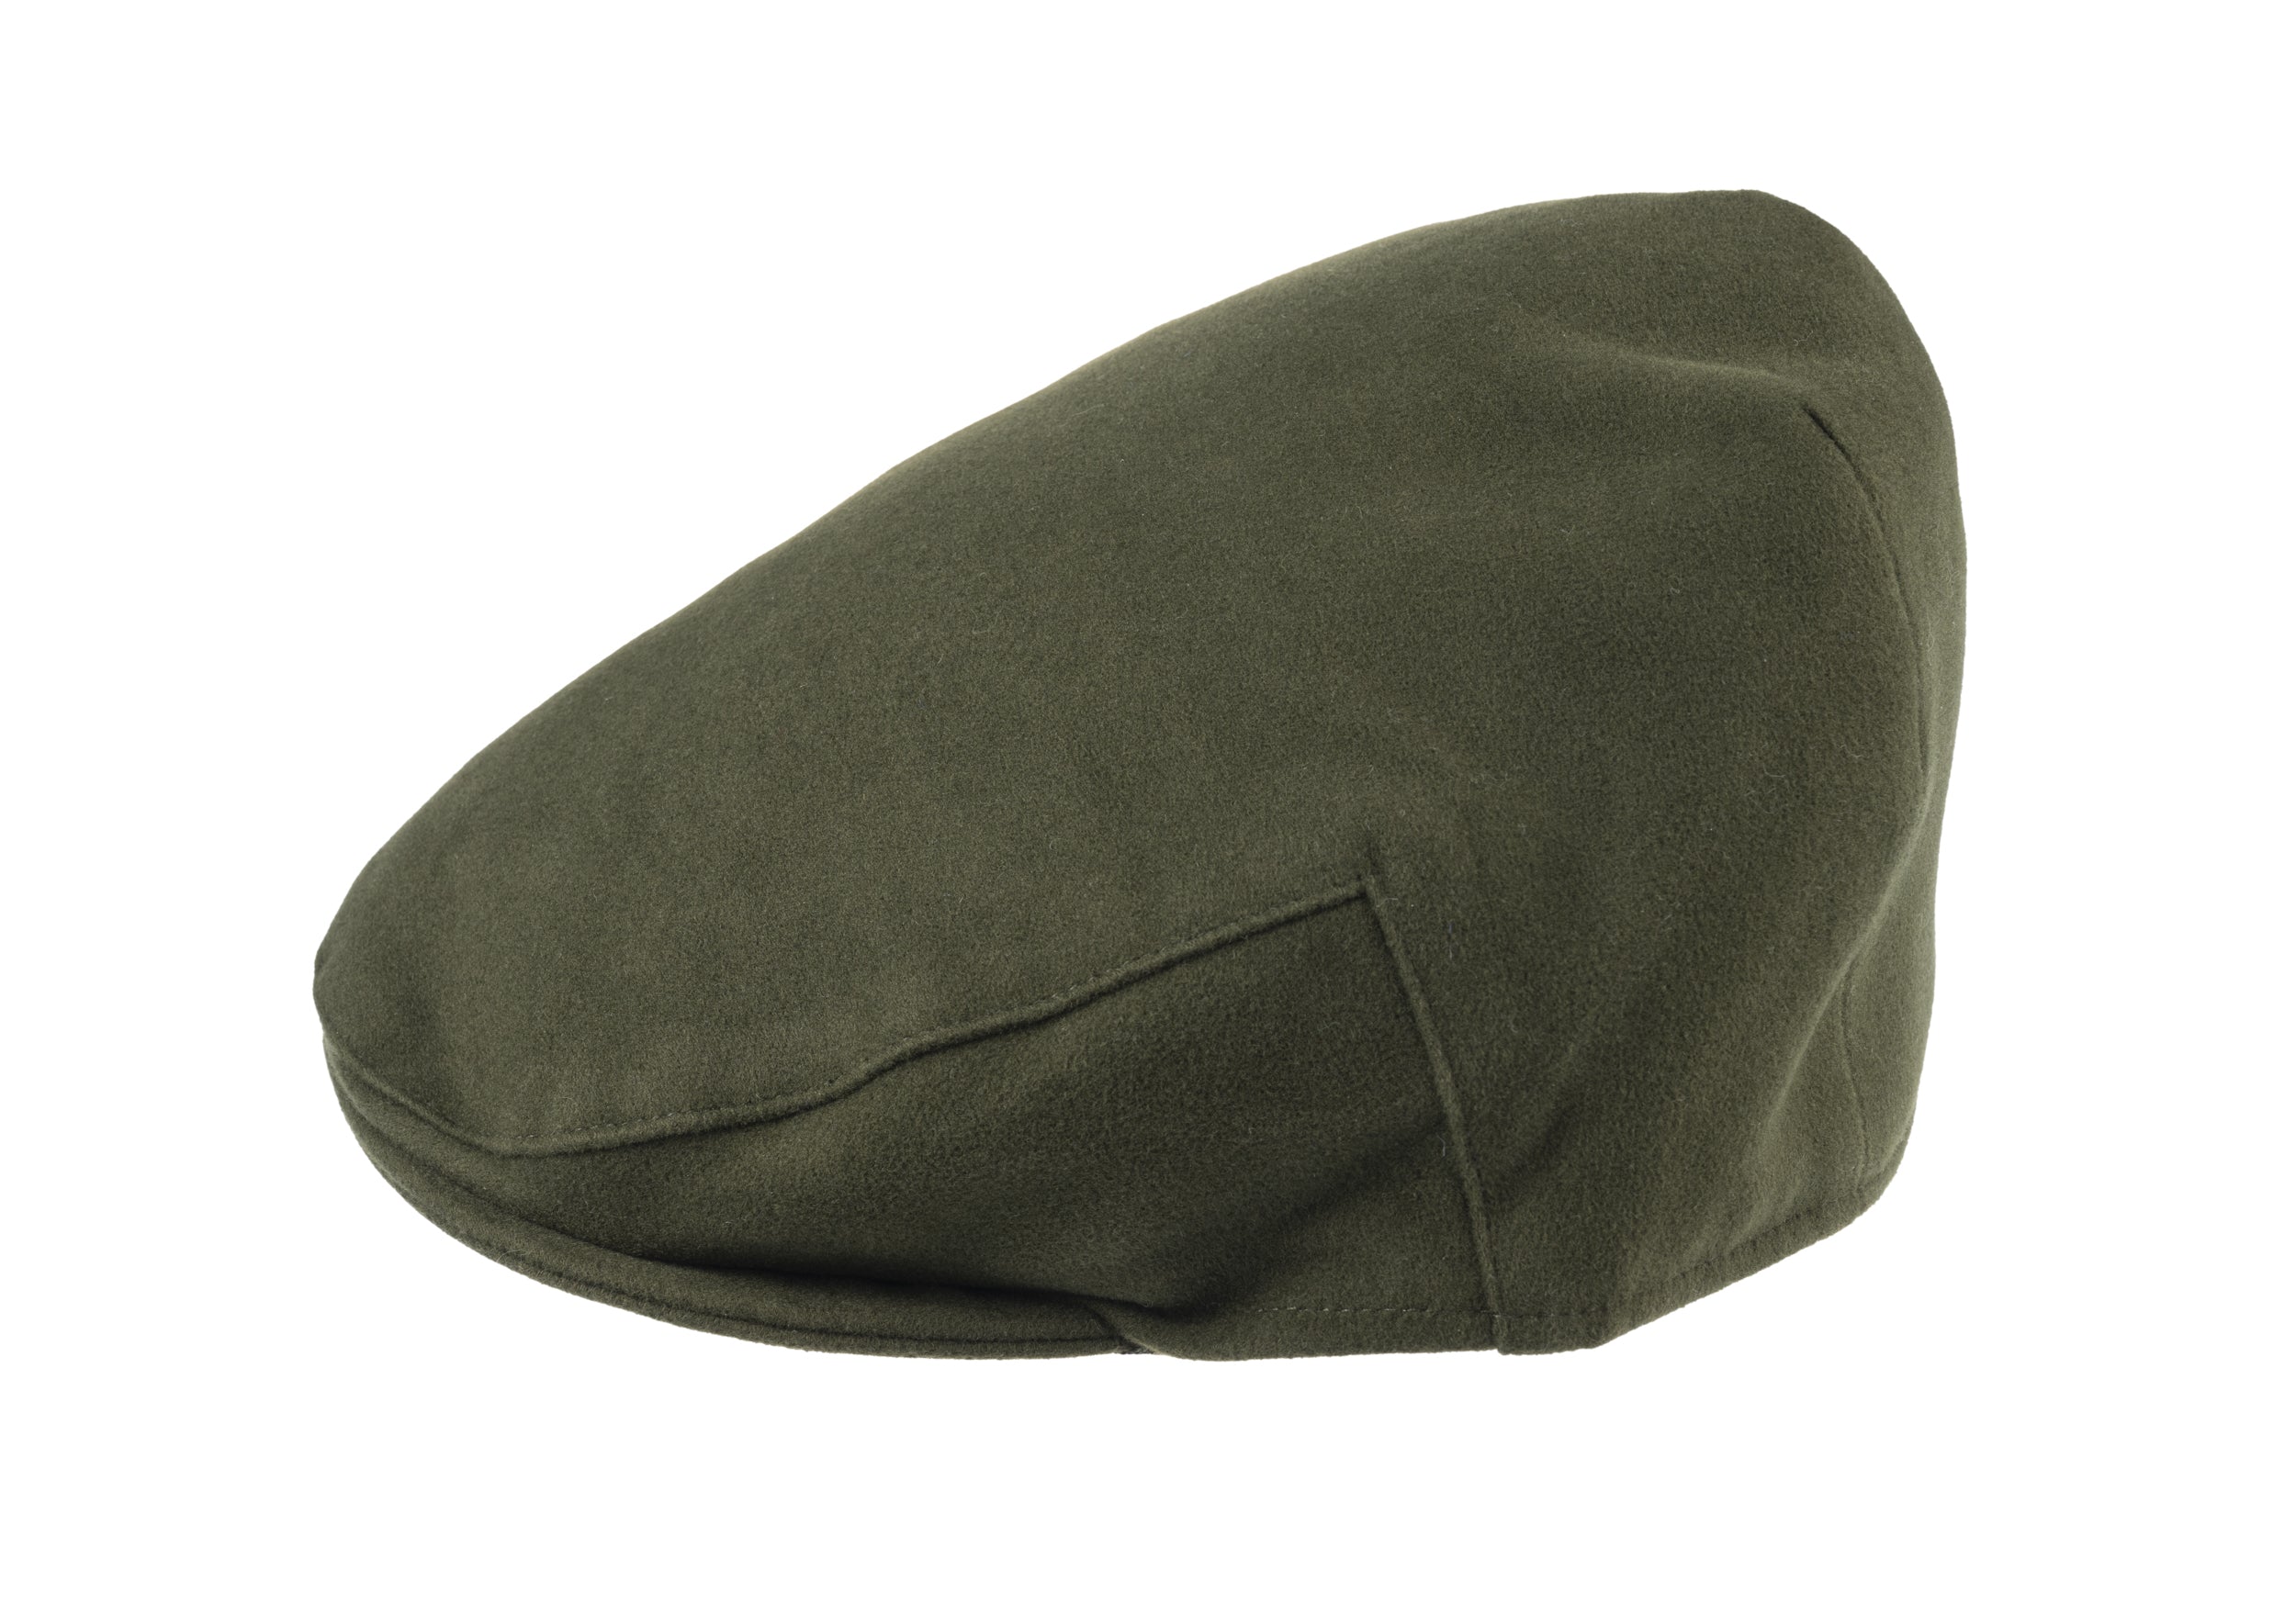 Balmoral moleskin cotton cap in Green